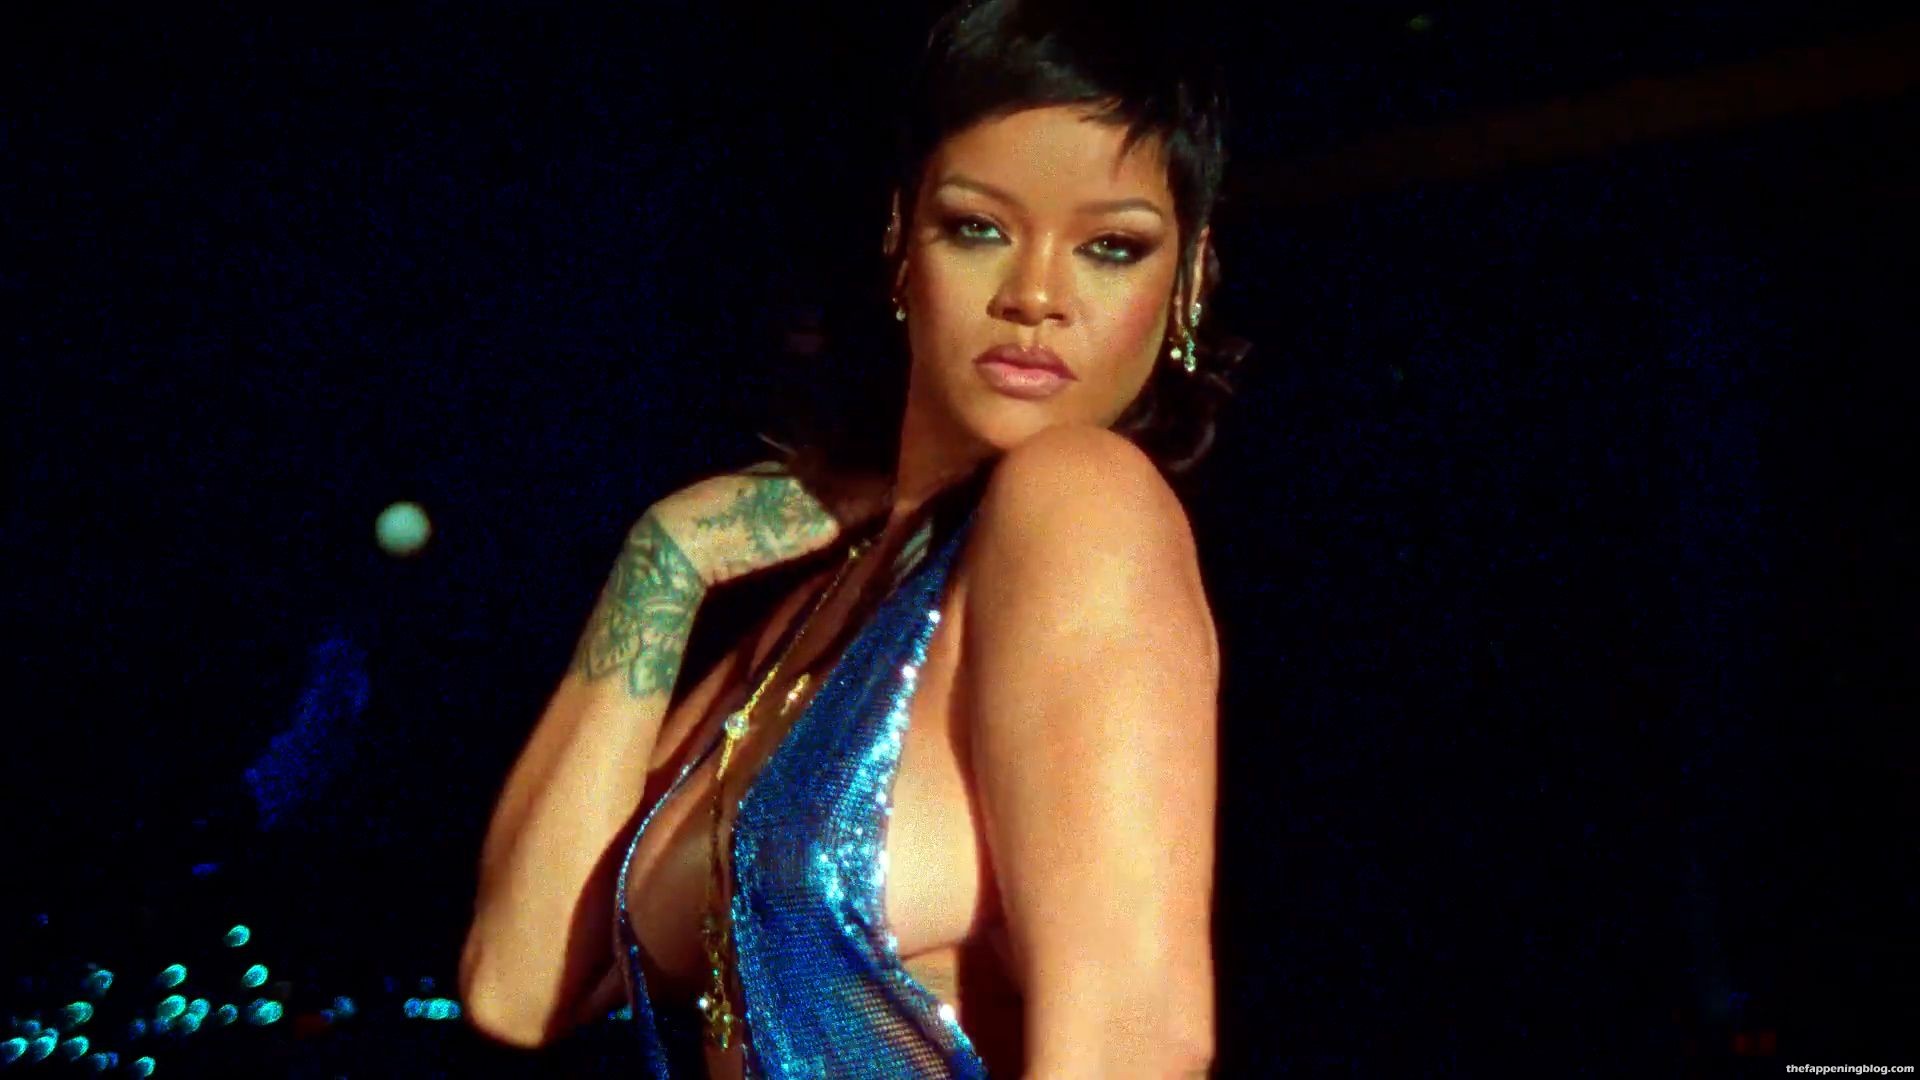 Rihanna-Boobs-Ass-4-11-thefappeningblog.com_.jpg